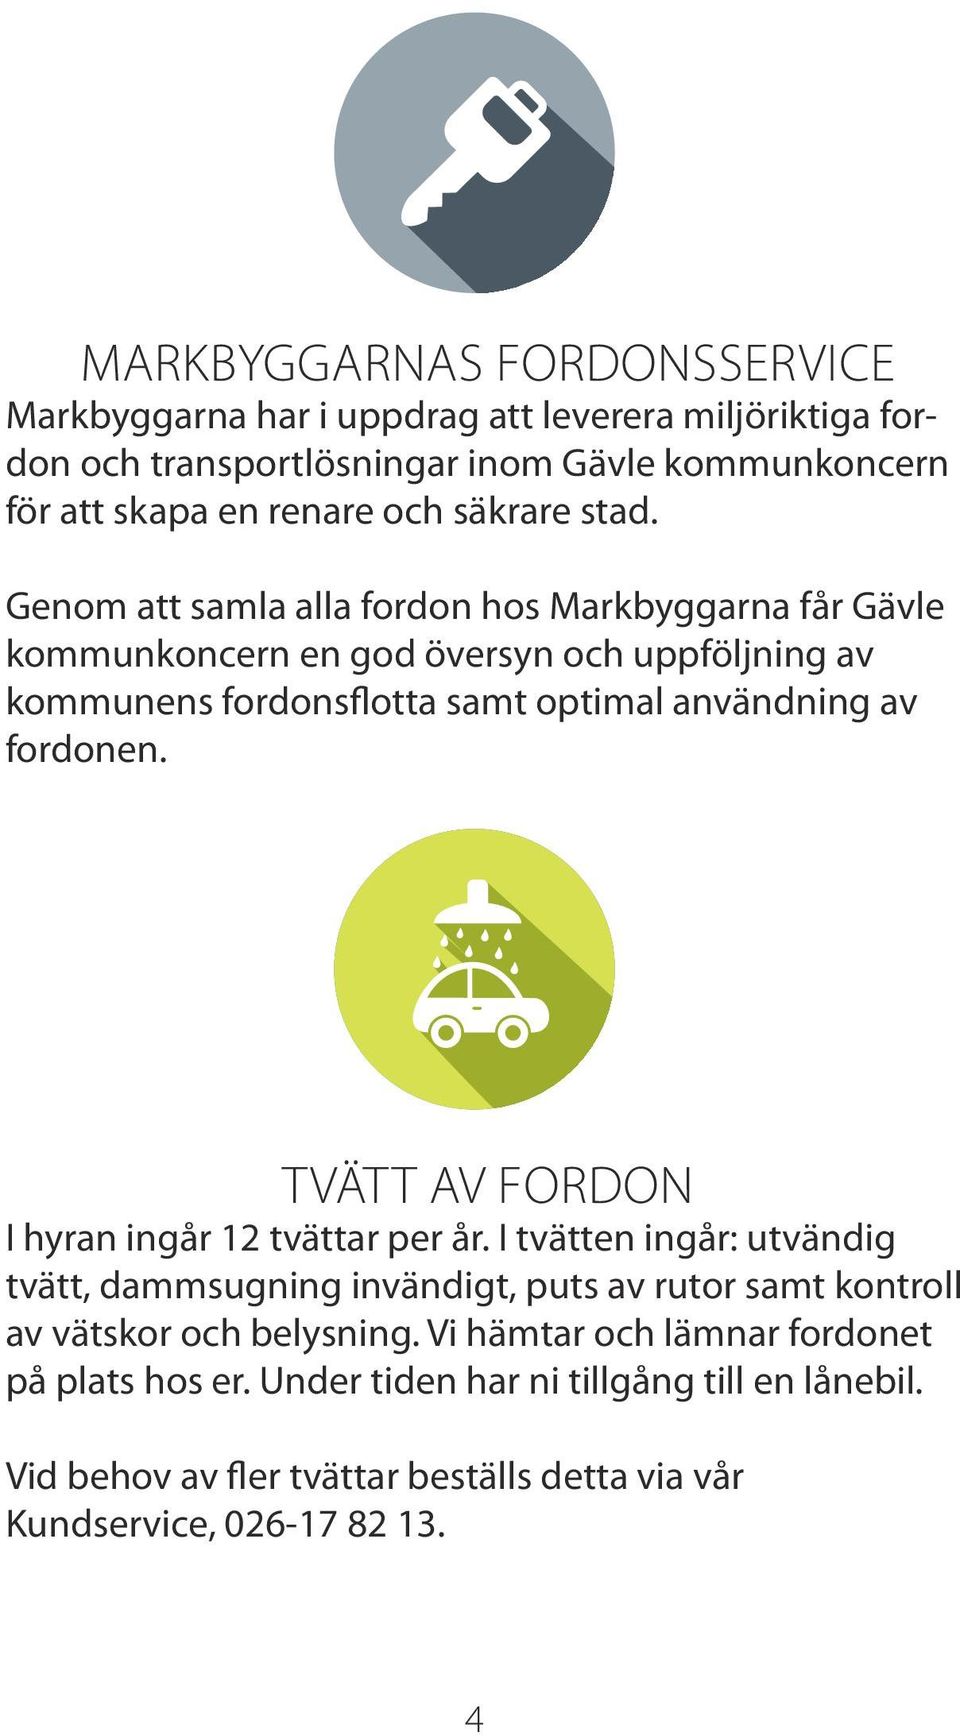 Genom att samla alla fordon hos Markbyggarna får Gävle kommunkoncern en god översyn och uppföljning av kommunens fordonsflotta samt optimal användning av fordonen.